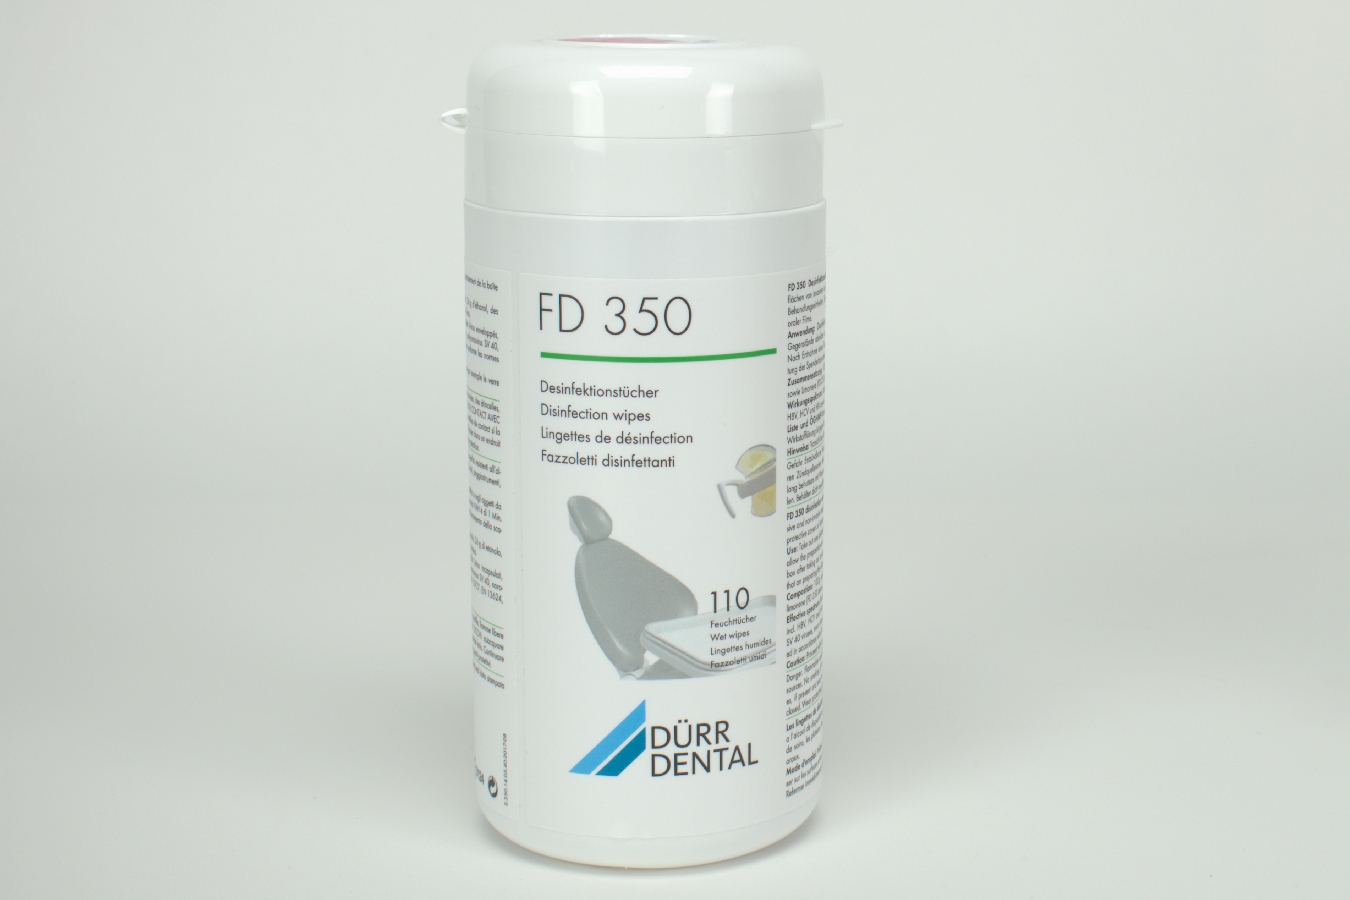 FD 350 Desinfektionstücher flower 110 Stück Dose